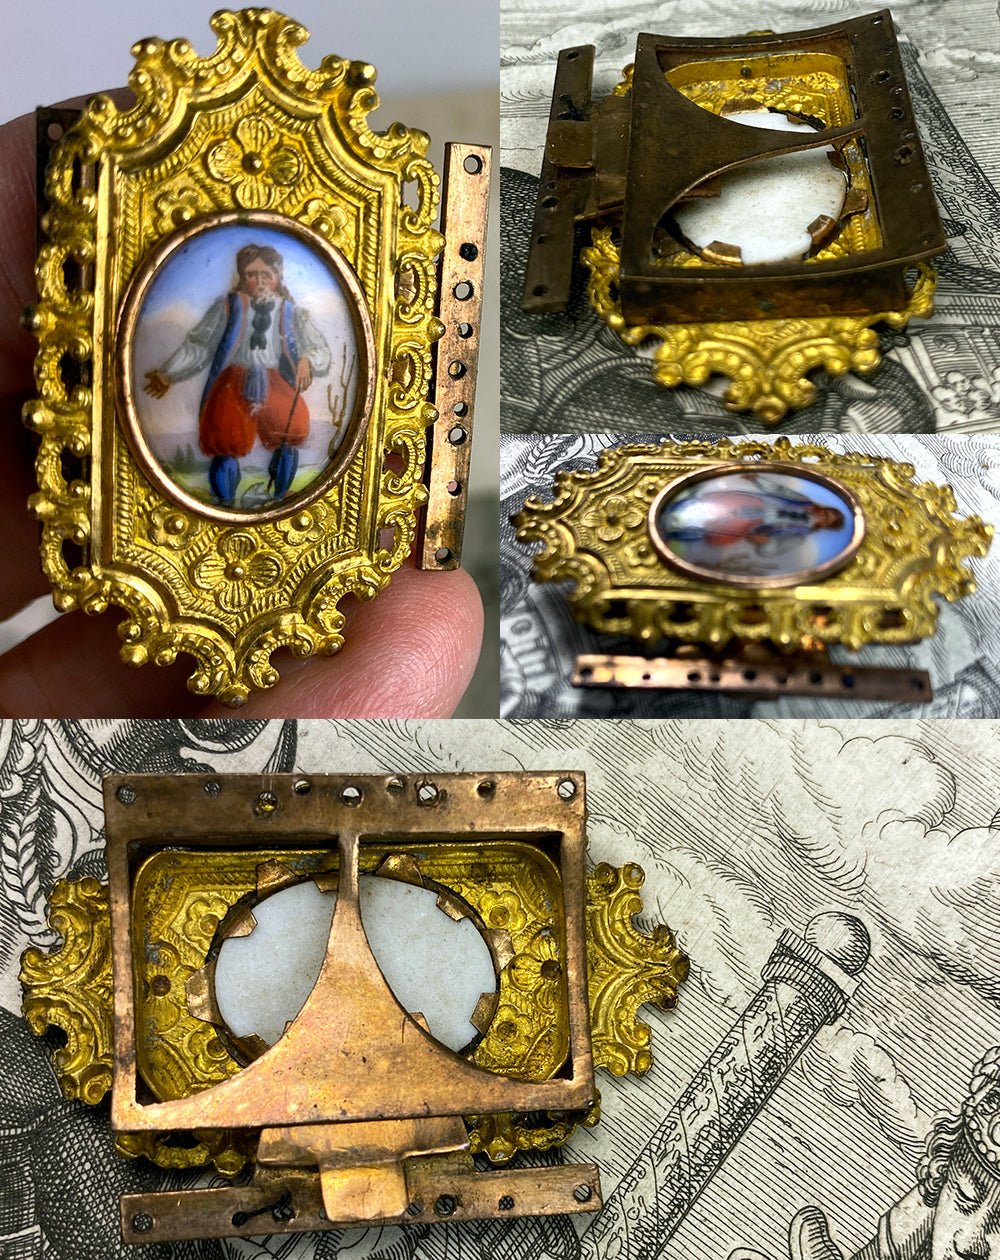 Antique Victorian Era 10k Gold Face Bracelet or Necklace Clasp, Portrait Miniature Porcelain